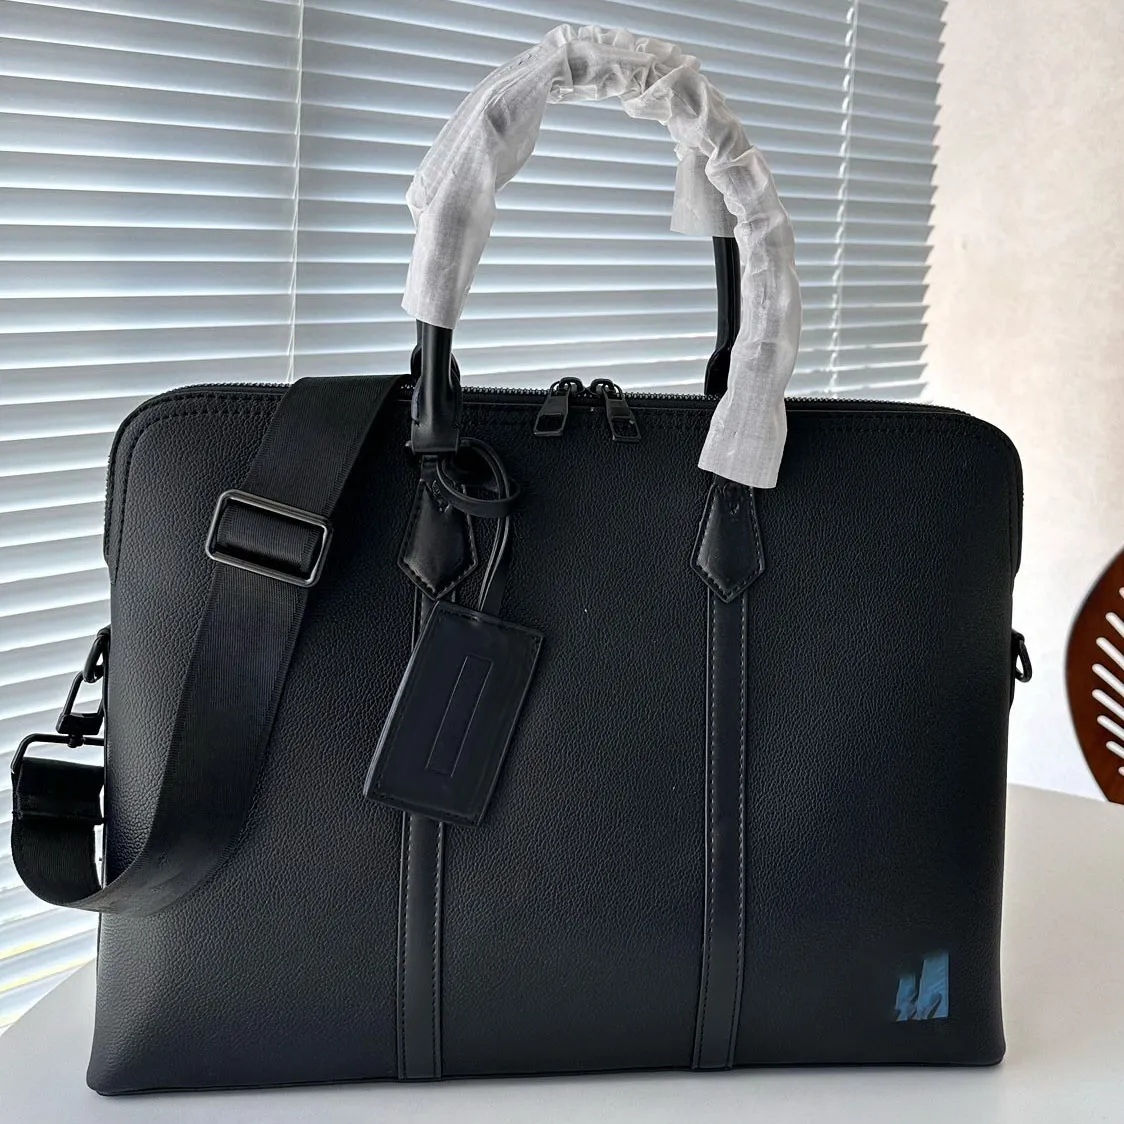 Famous designer men leather briefcase business messenger bag outdoor work bag shoulder bag women casual cross-body bag travel bag business handbag Laptop Bag